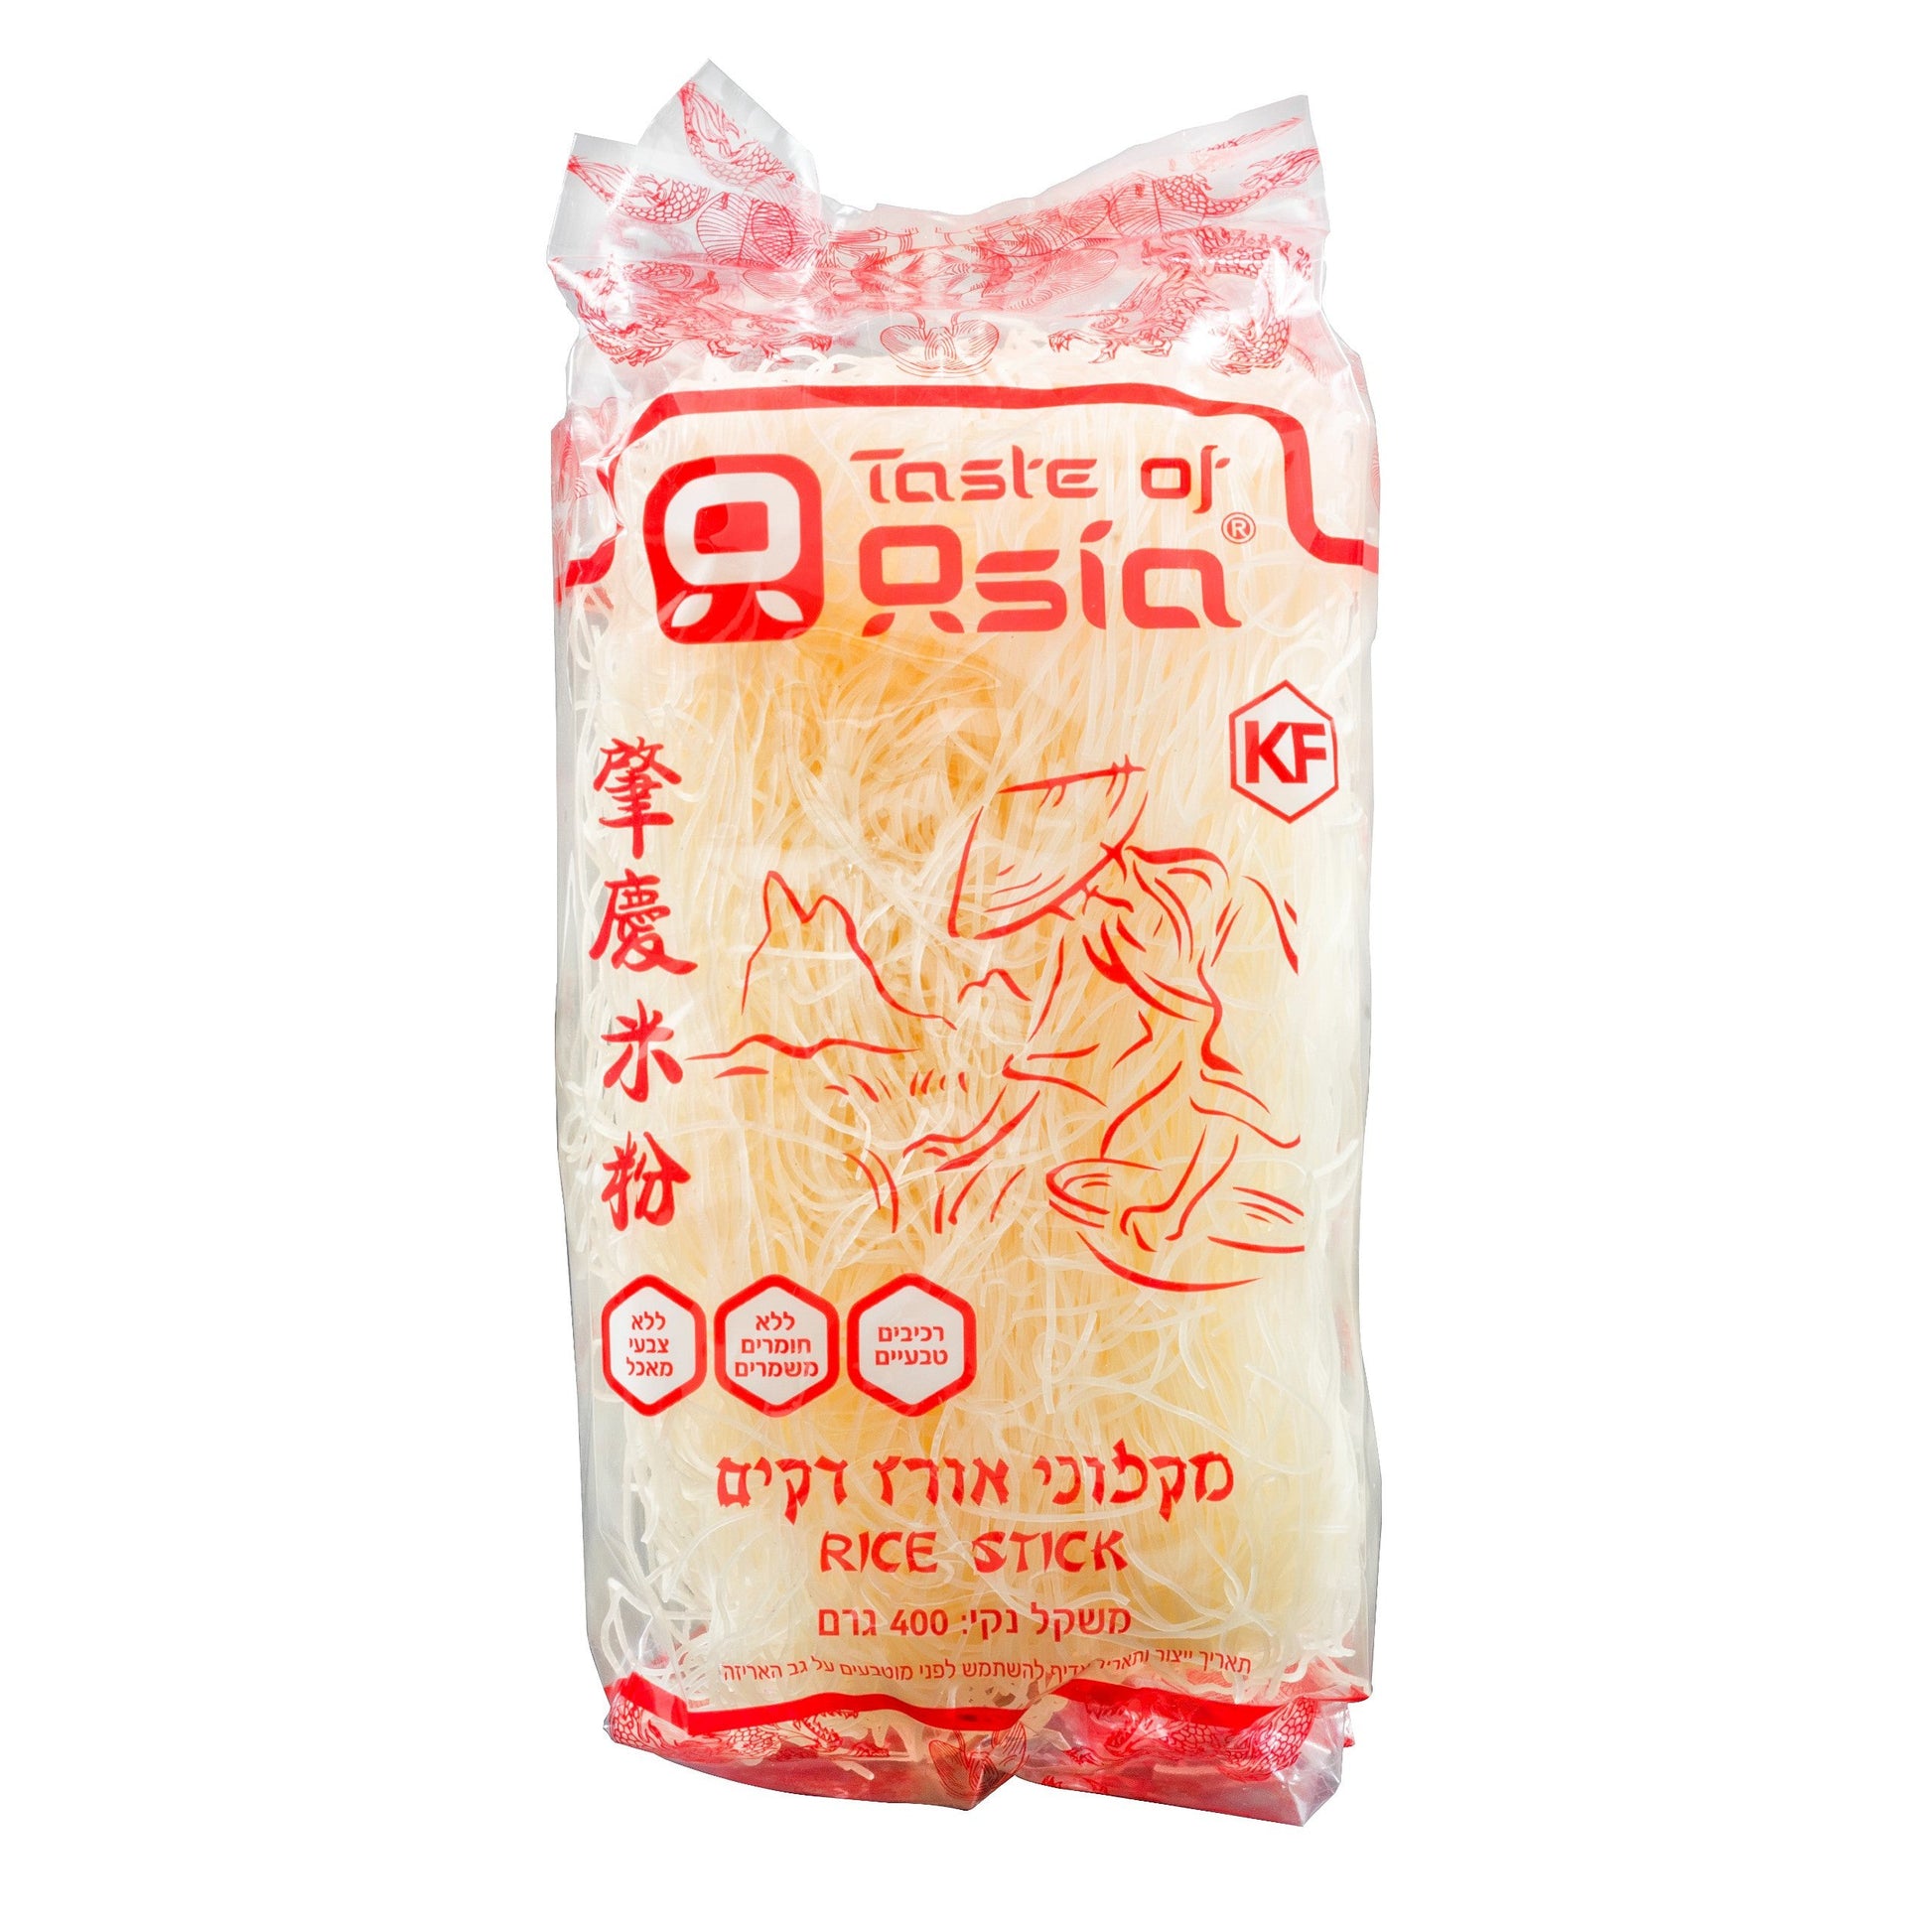 אטריות אורז דקות | טעמי אסיה - Taste of Asia - פריקפוא